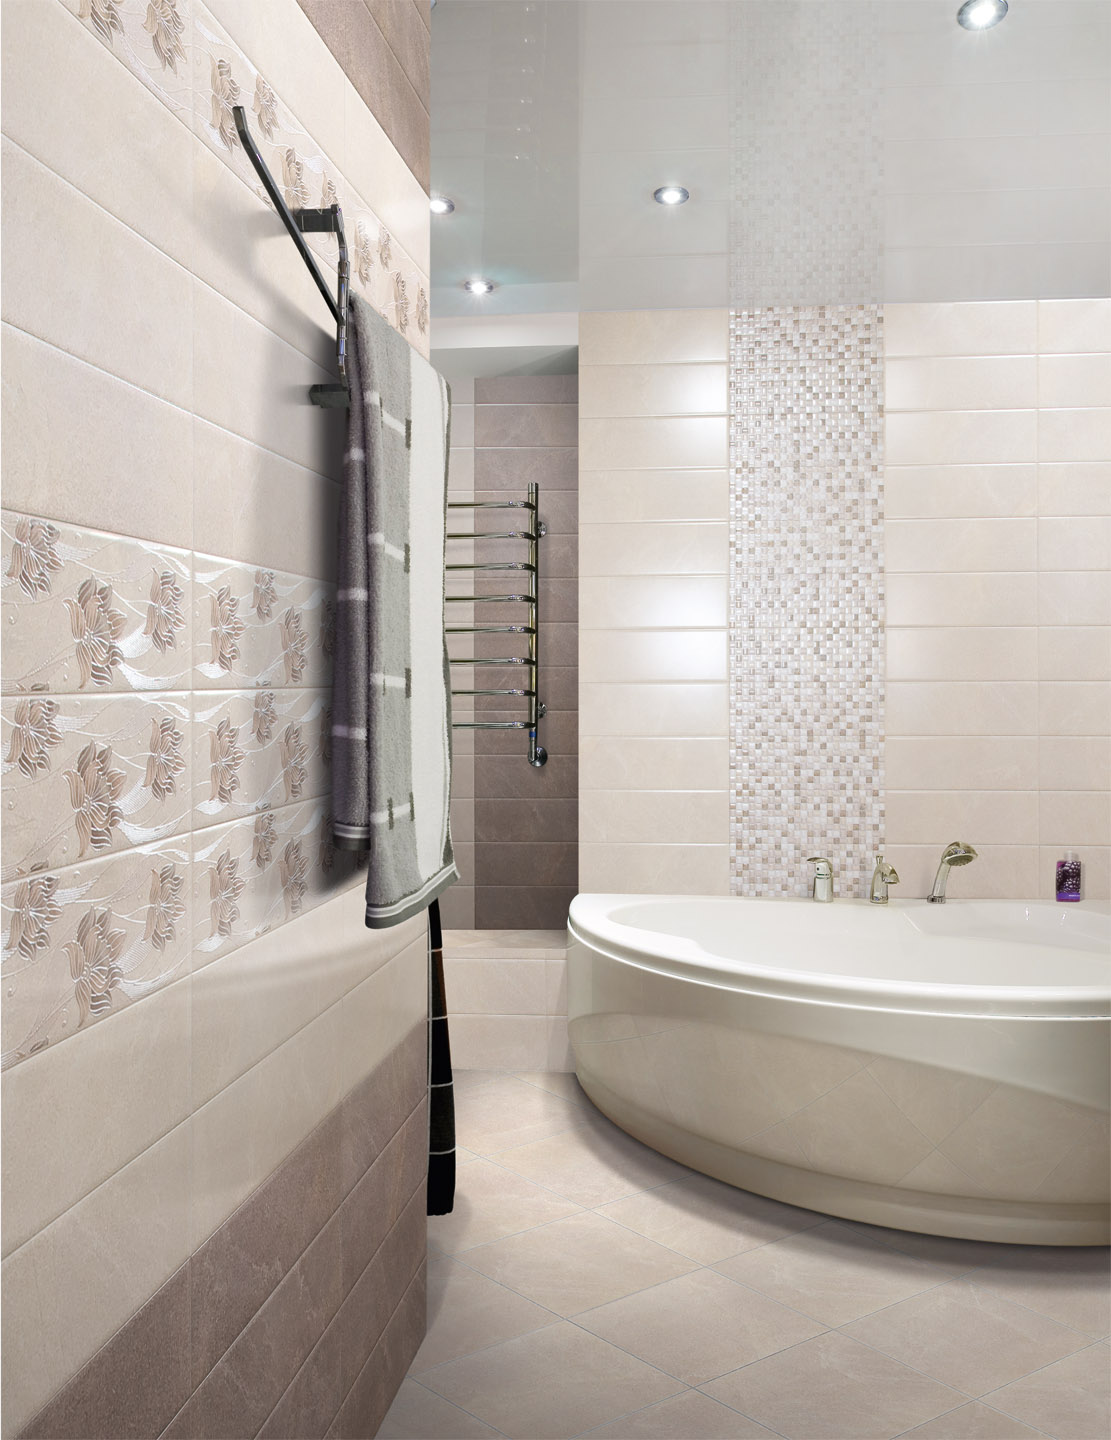 фото ванной комнаты с плиткой современный дизайн